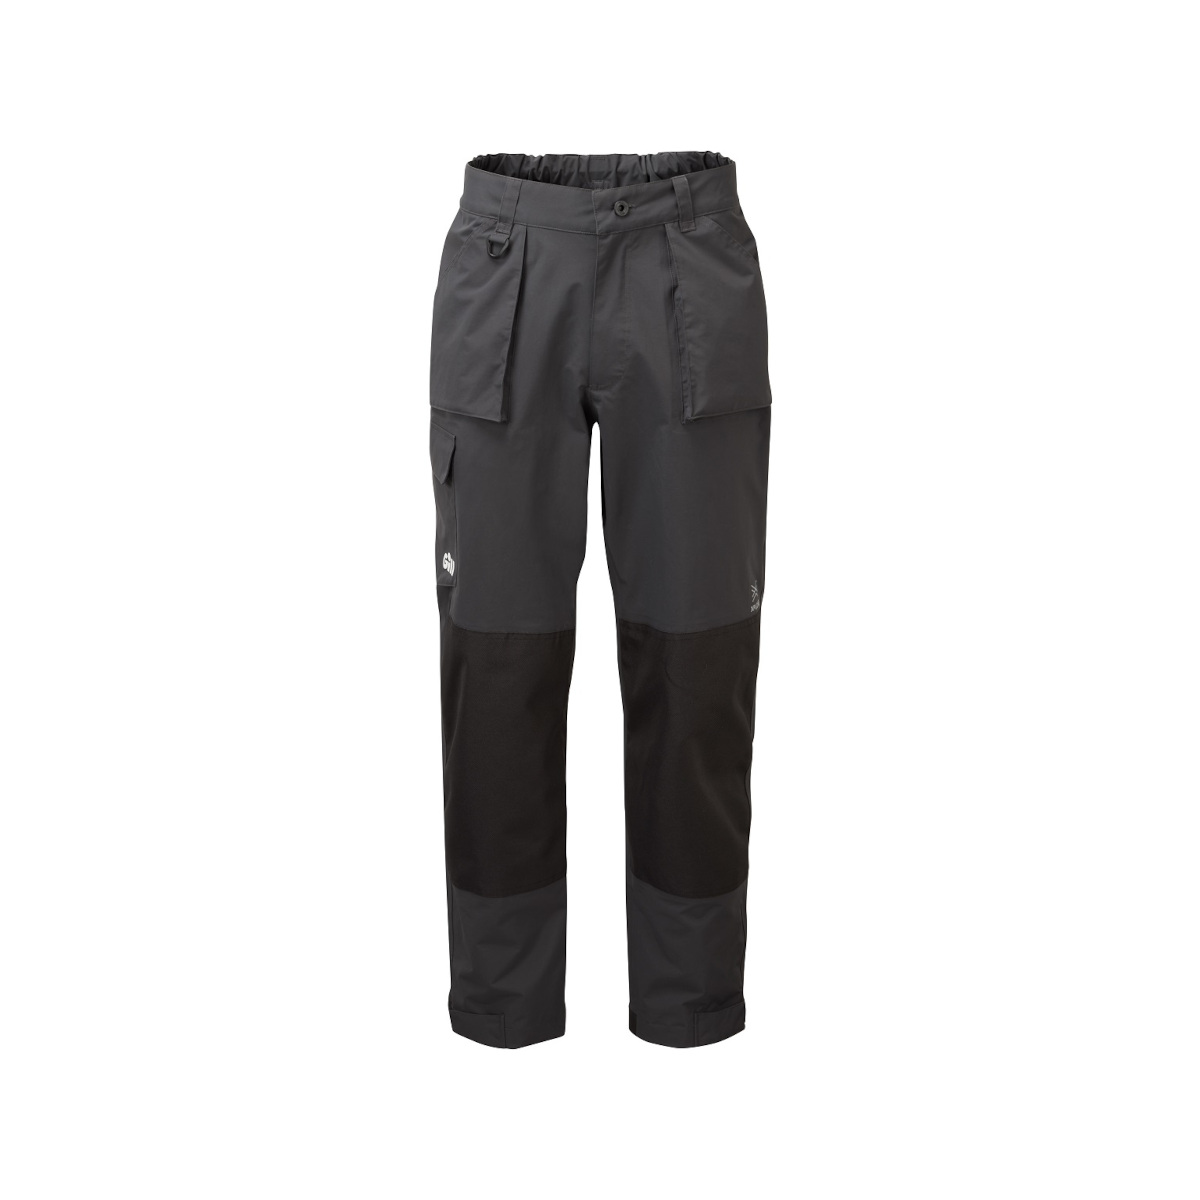 Gill OS32 Coastal pantalon de quart, homme - graphite, taille M